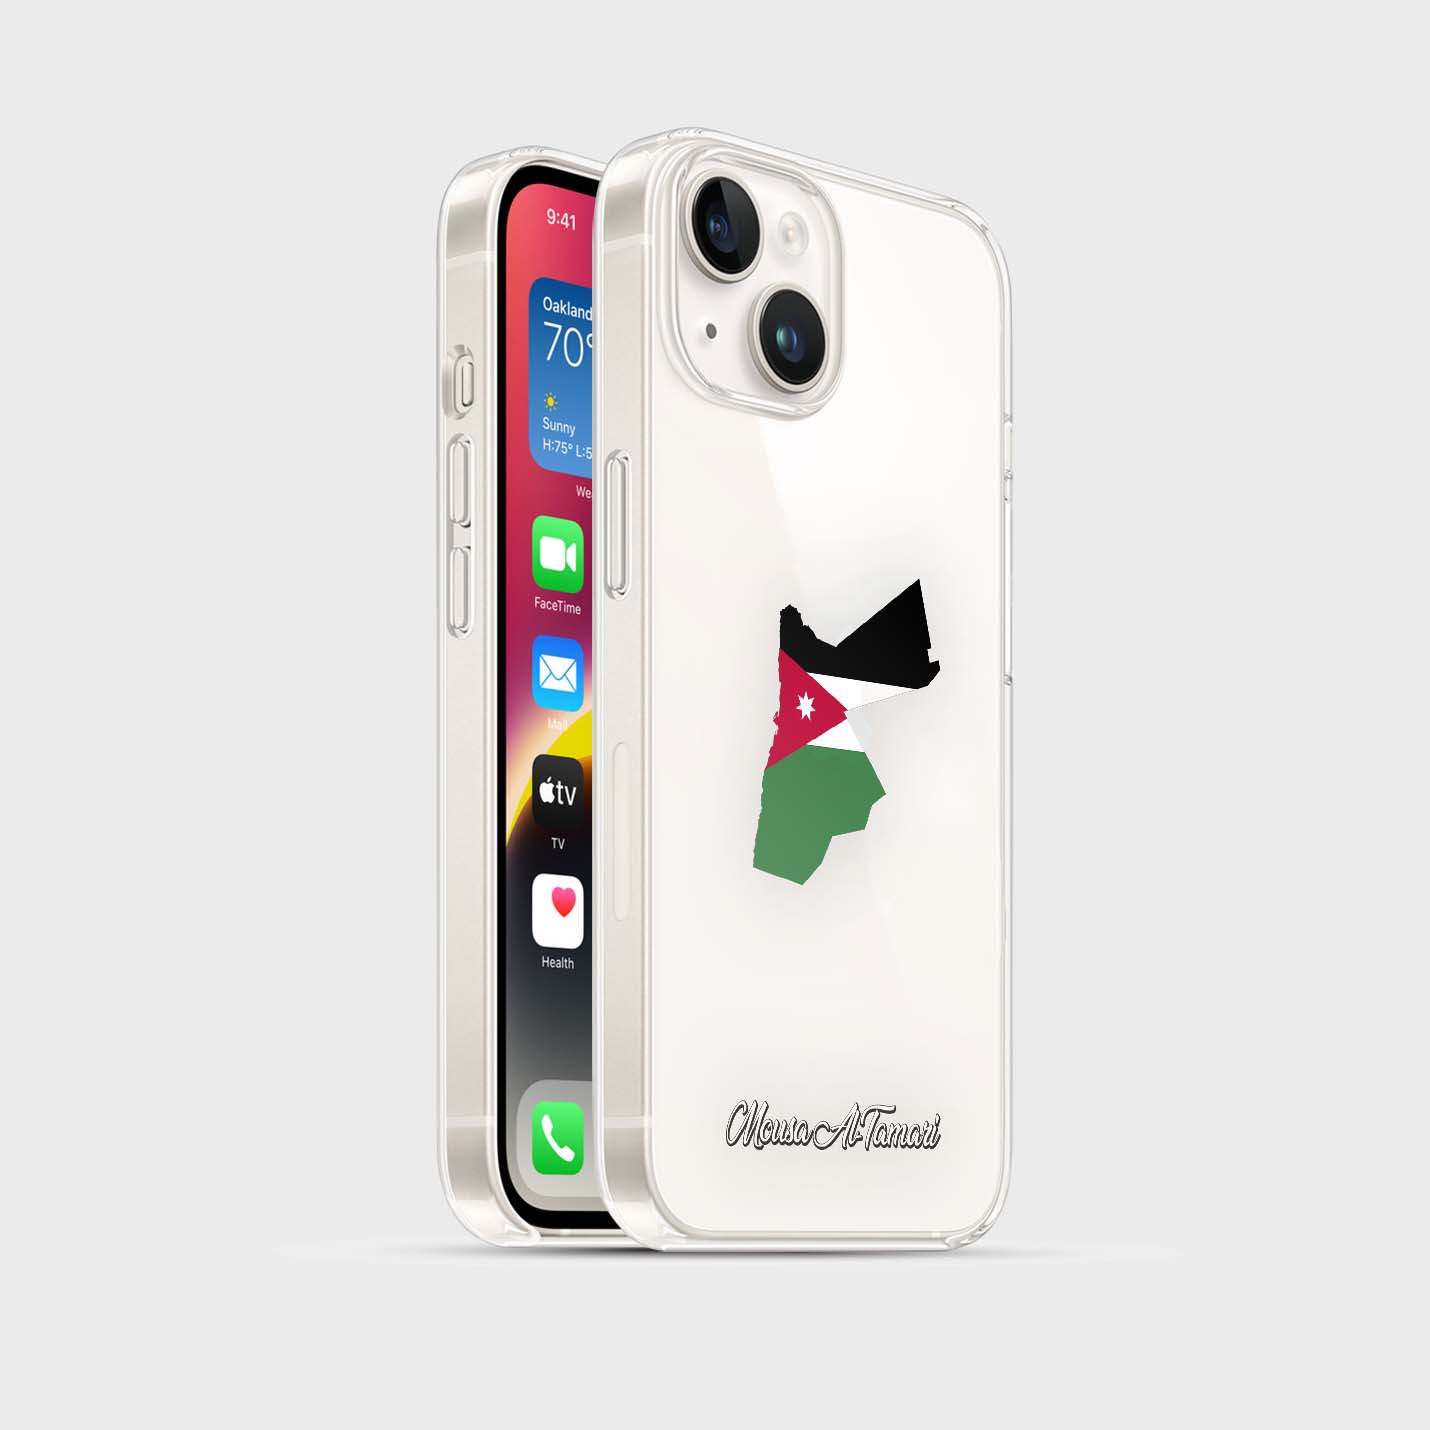 Handyhüllen mit Flagge - Jordanien - 1instaphone